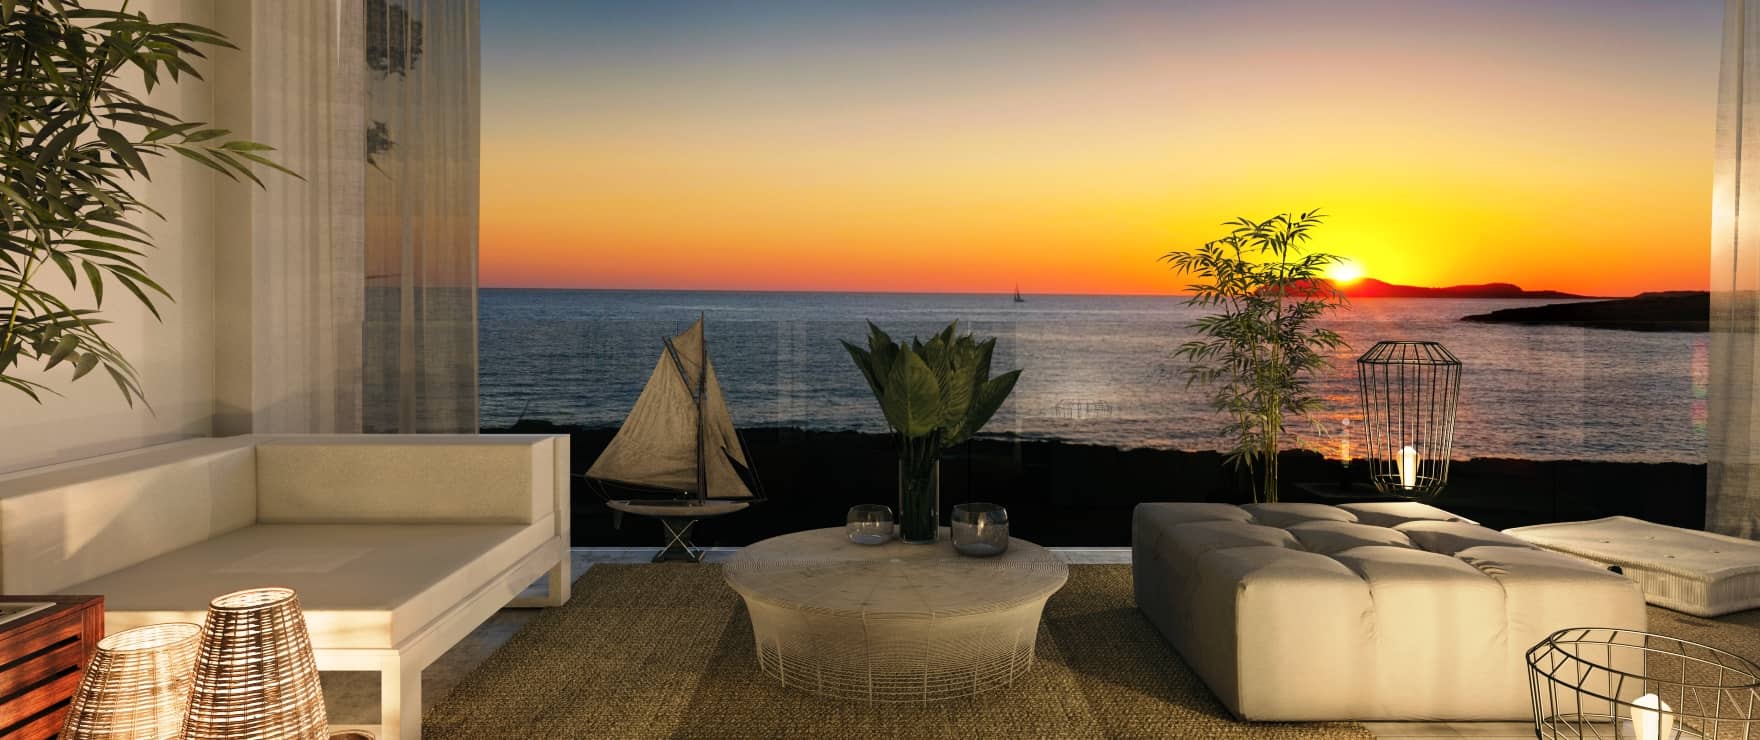 Sunset Ibiza, nuevos apartamentos con amplias terrazas y vistas al mar